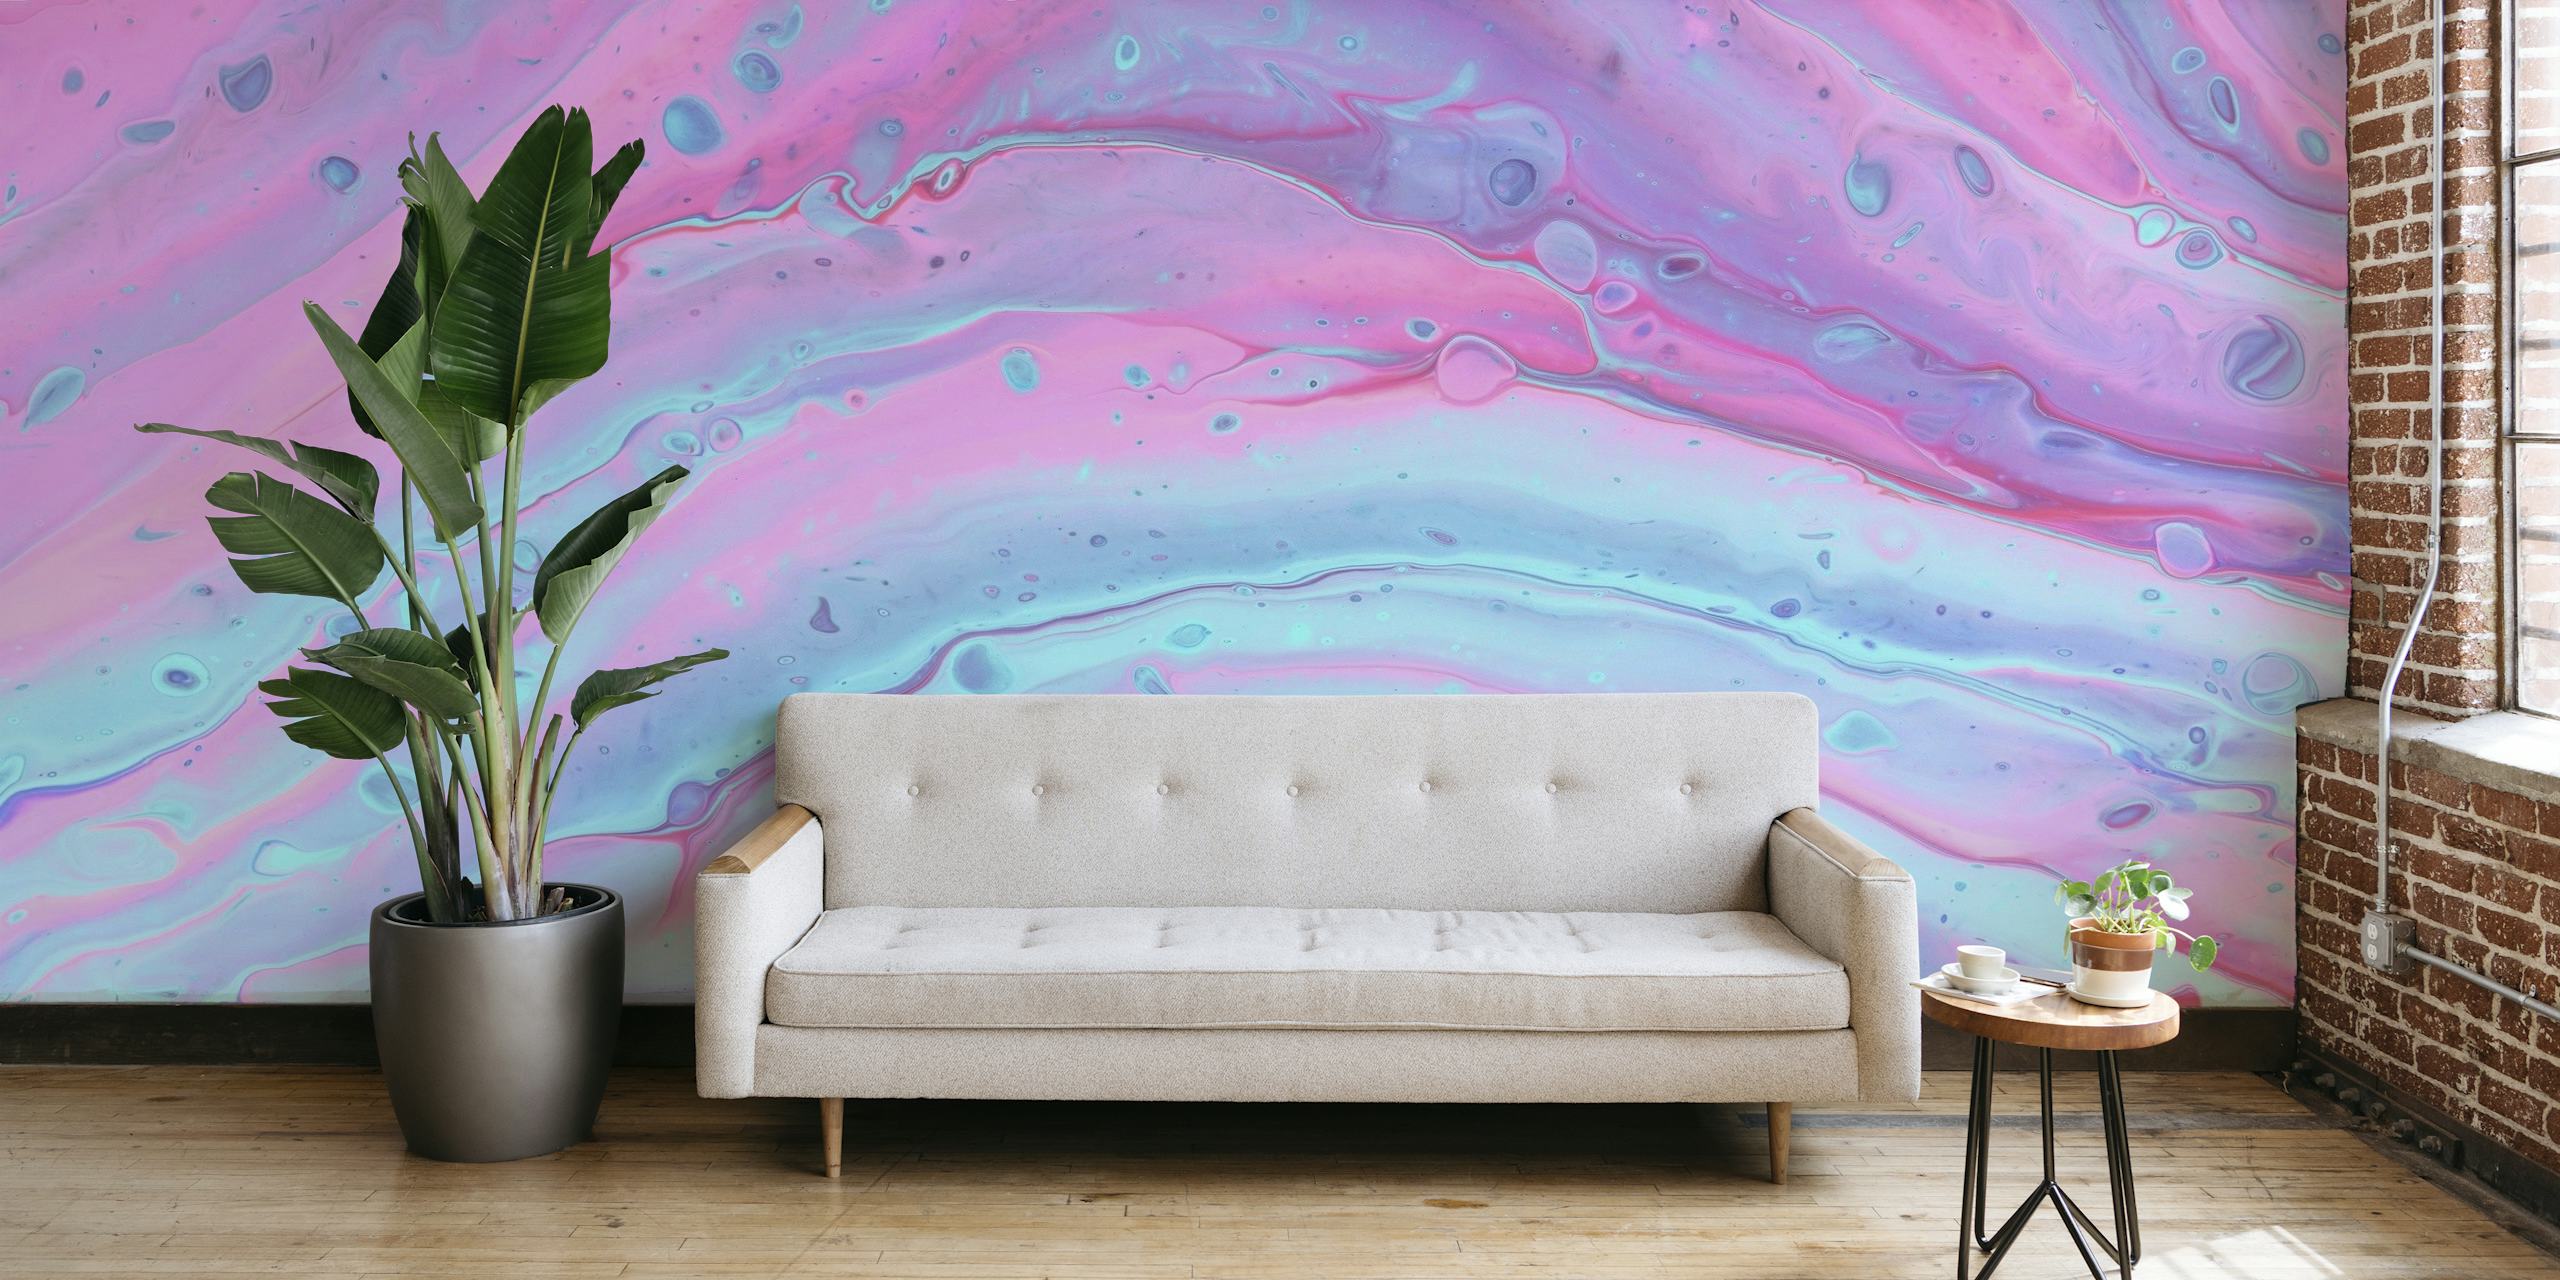 Vibrant liquid marble wallpaper